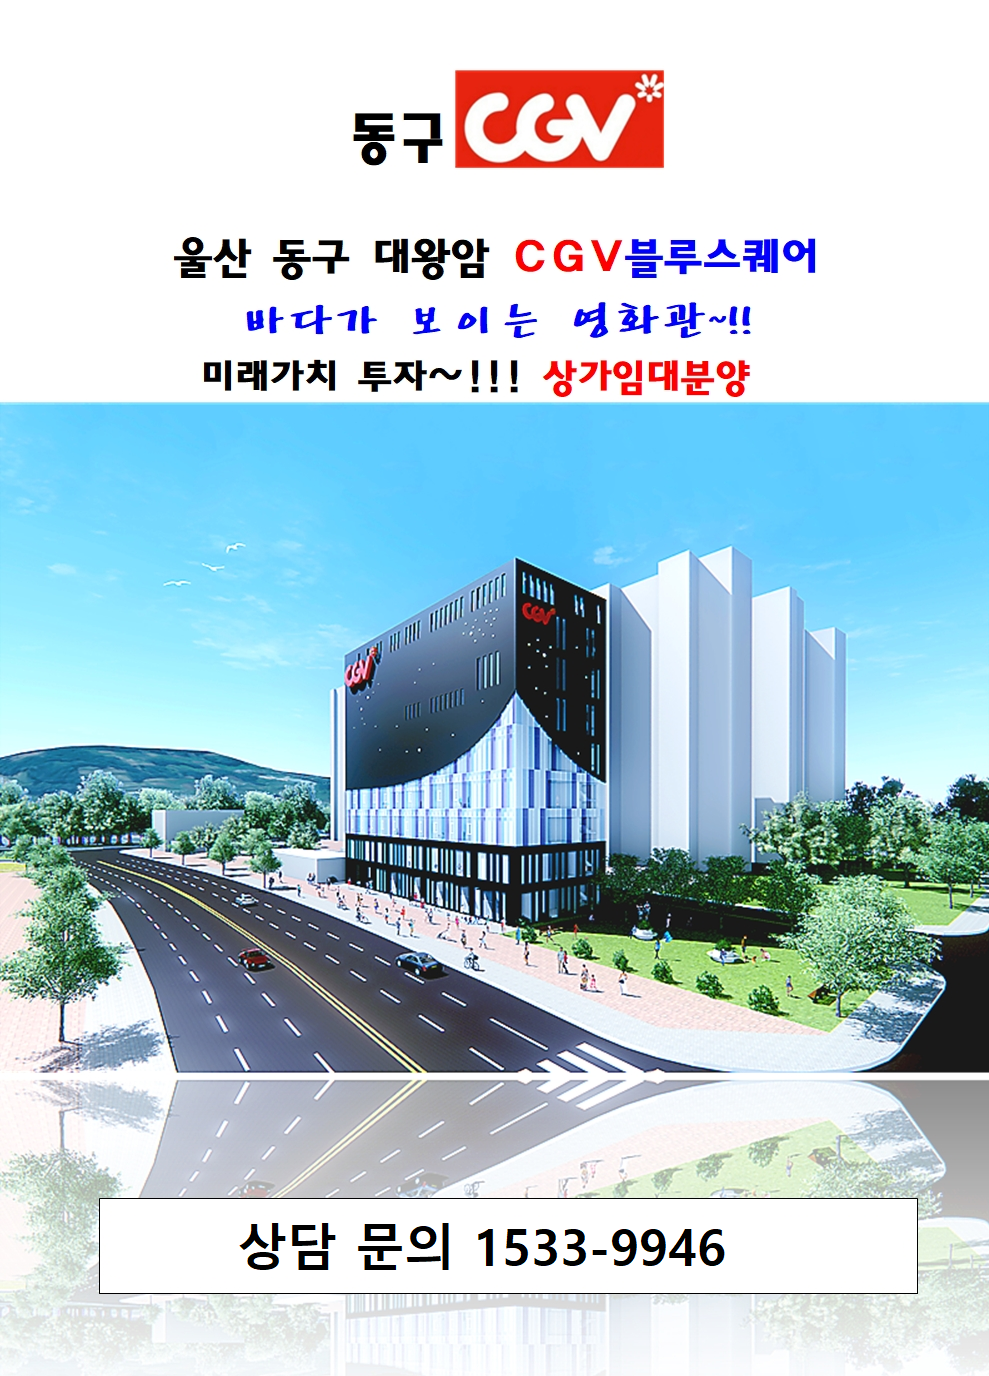 울산 동구 대왕암 CGV 상가 분양 정보